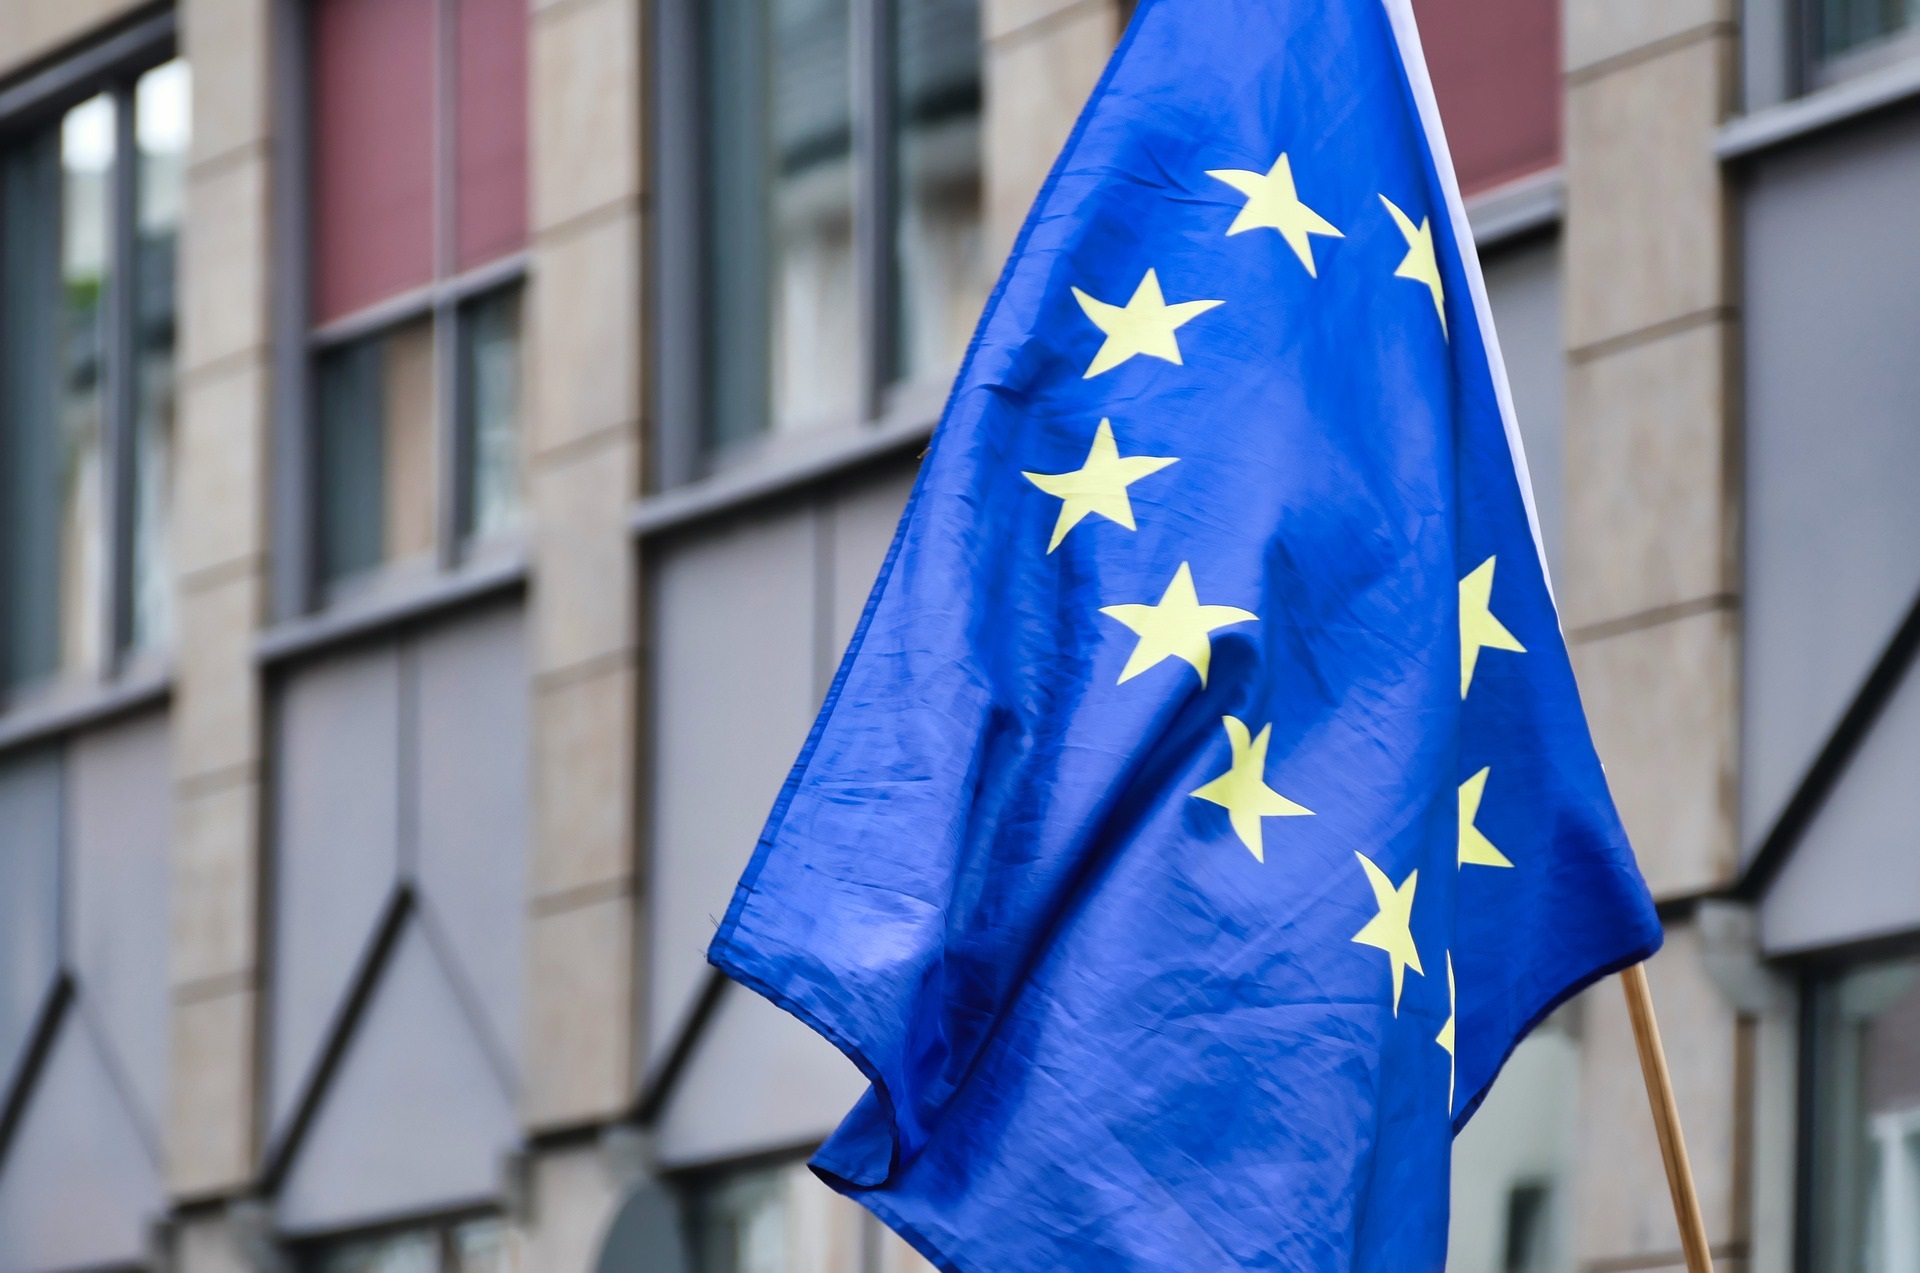 علم كبير للاتحاد الأوروبي في بروكسل (بيكساباي)